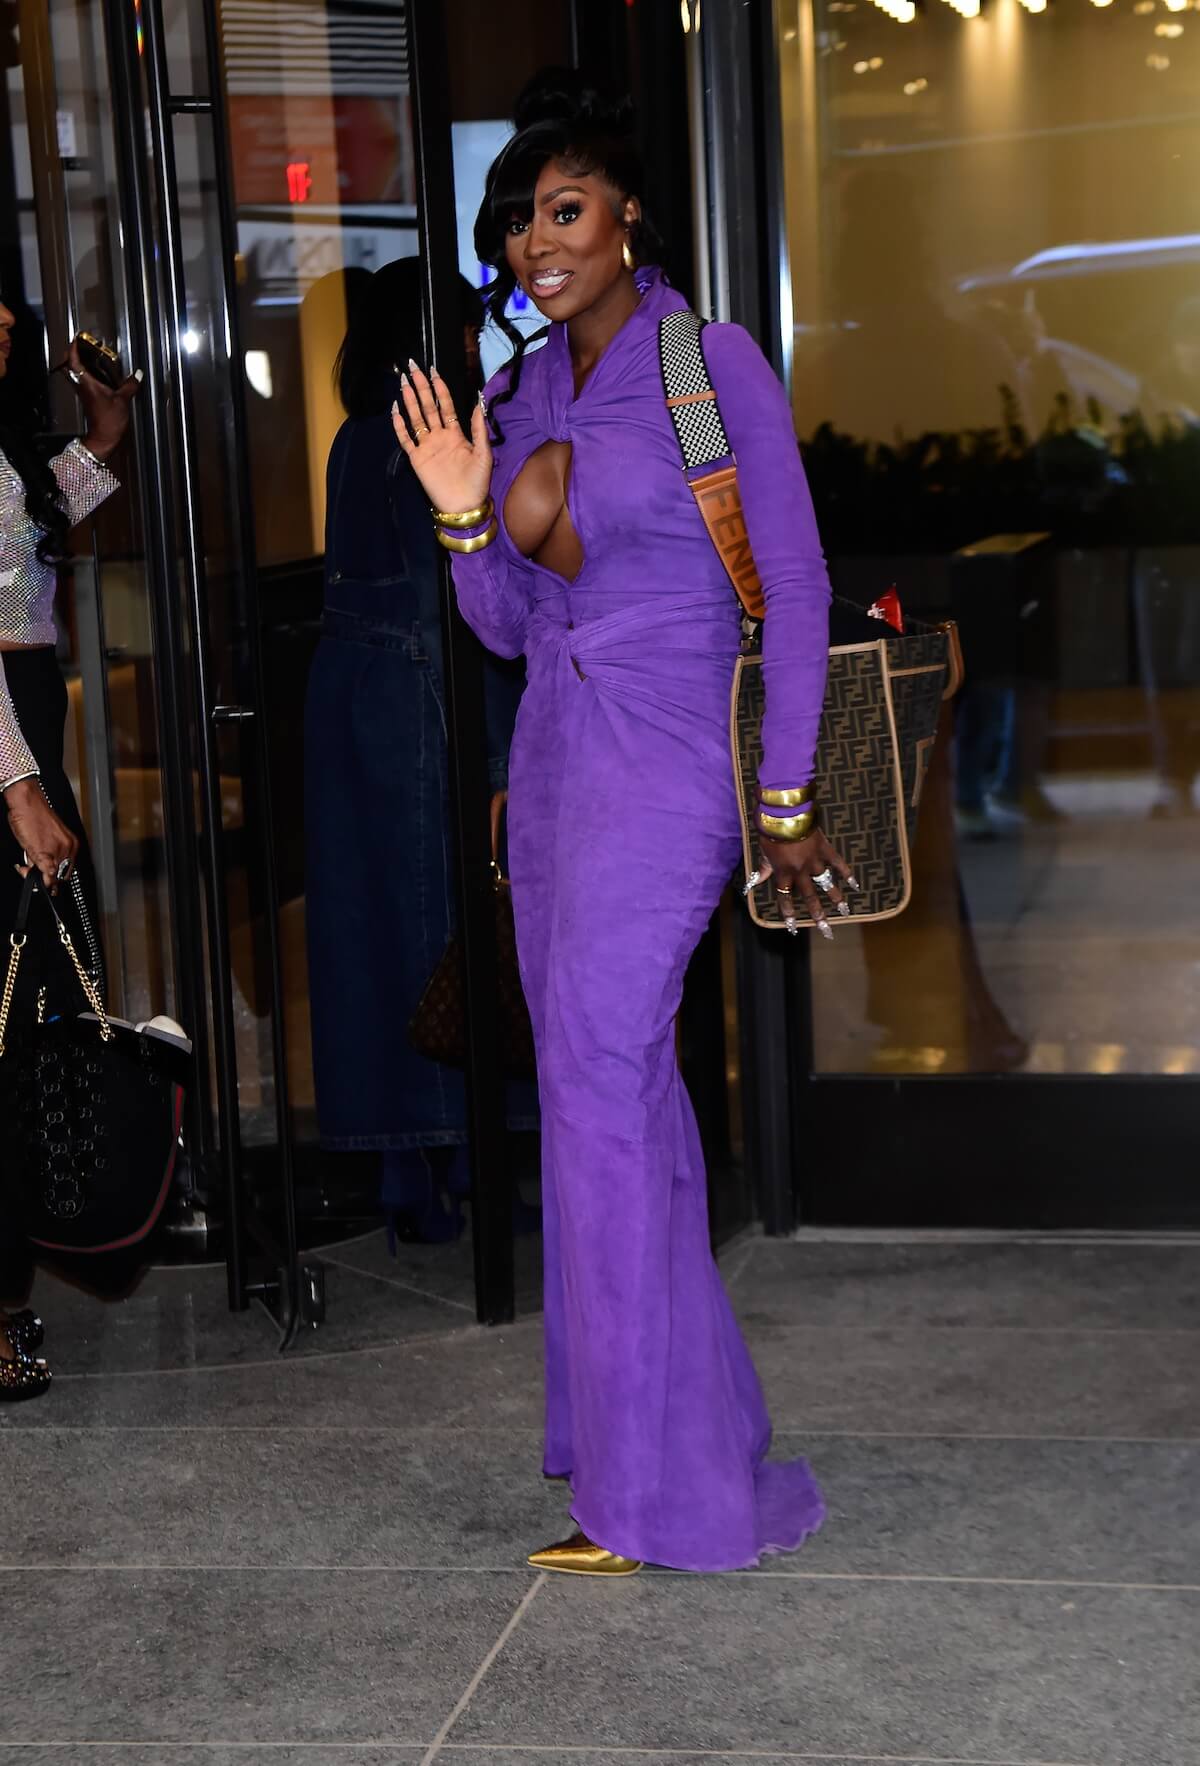 Wendy Osefo waving in a purple dress